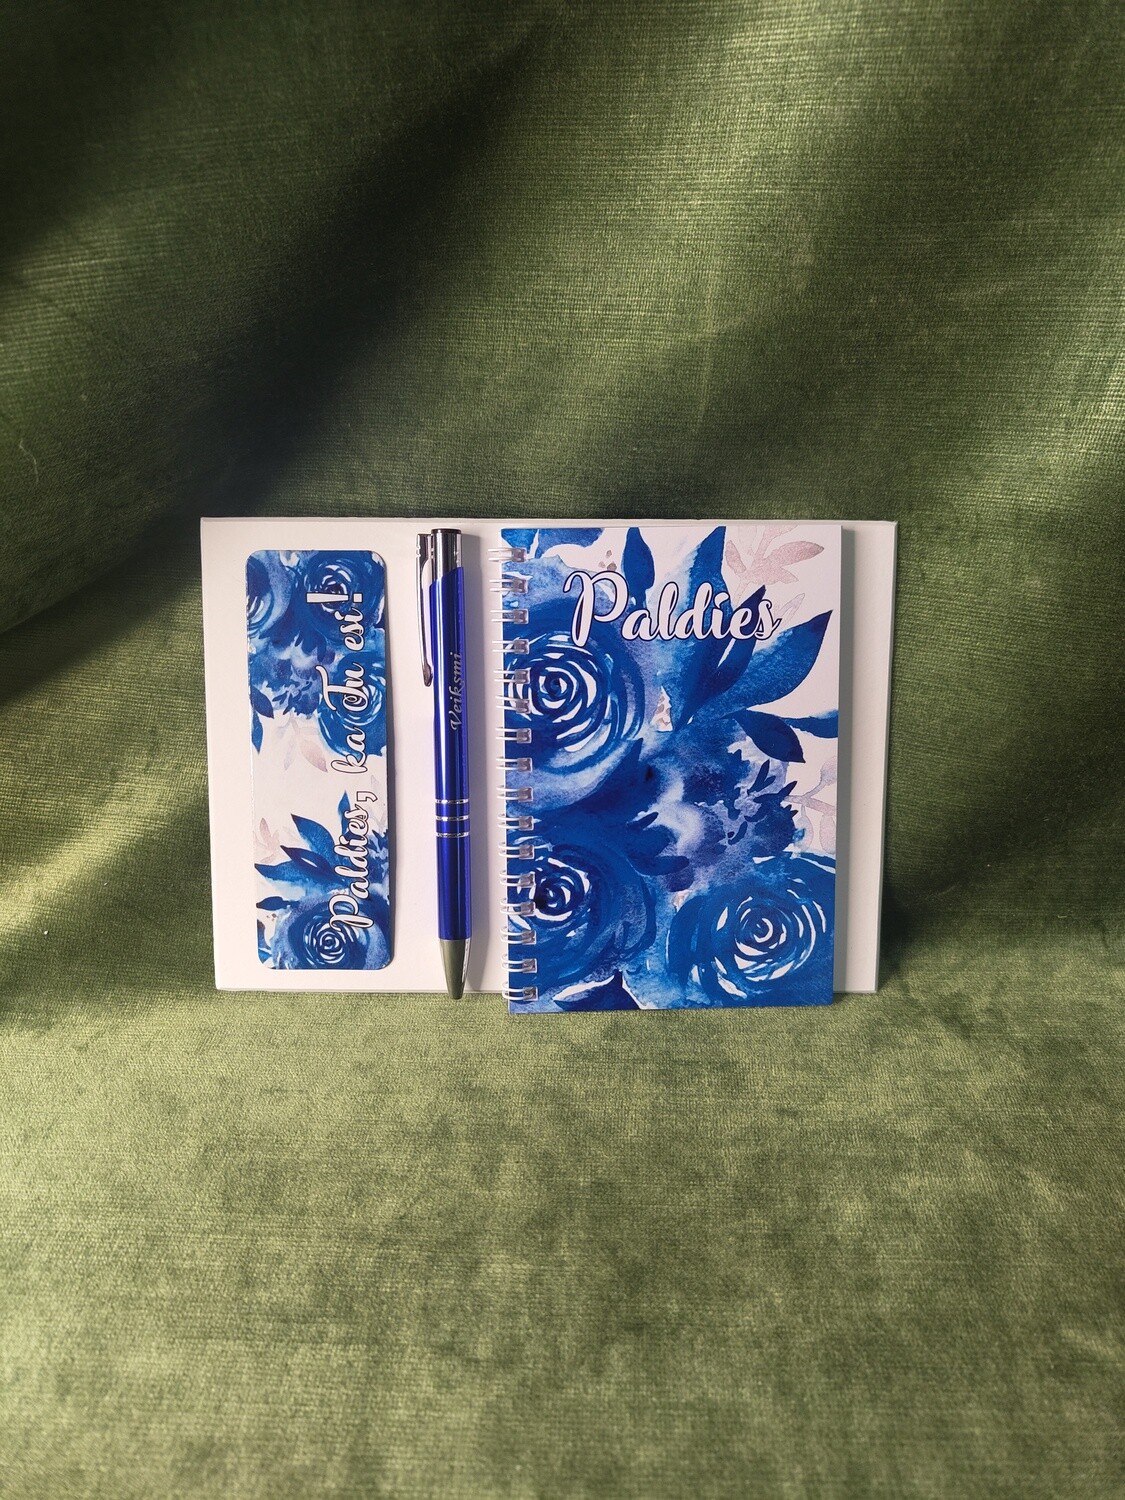 Dāvanu komplekts "Paldies - zilas rozes"